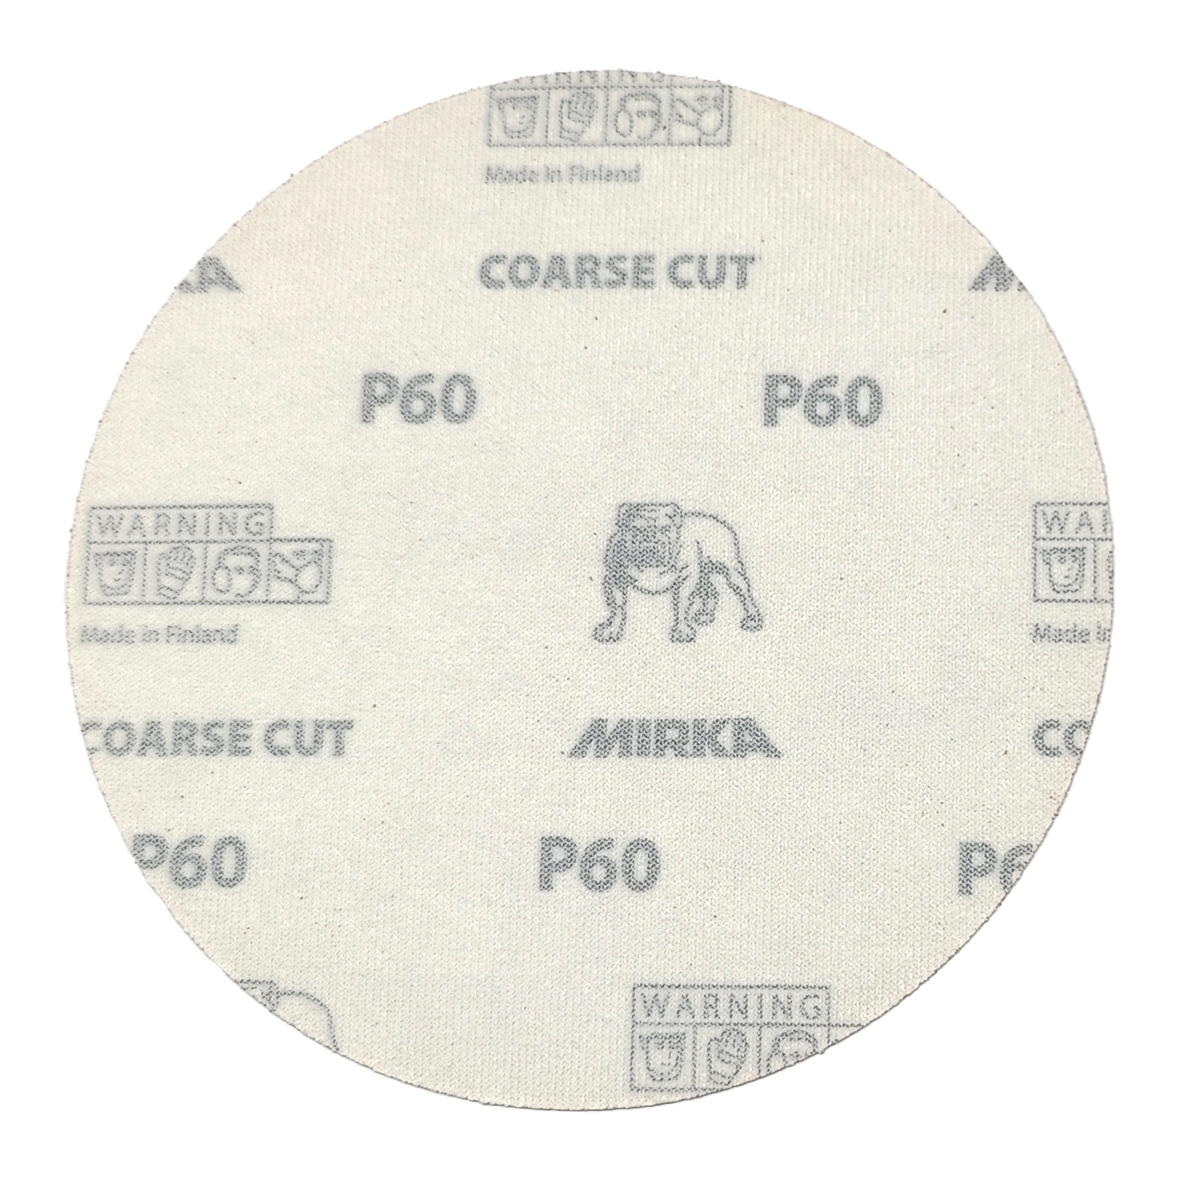 Abbildung Mirka Coarse Cut 150mm Scheiben Rückseite.